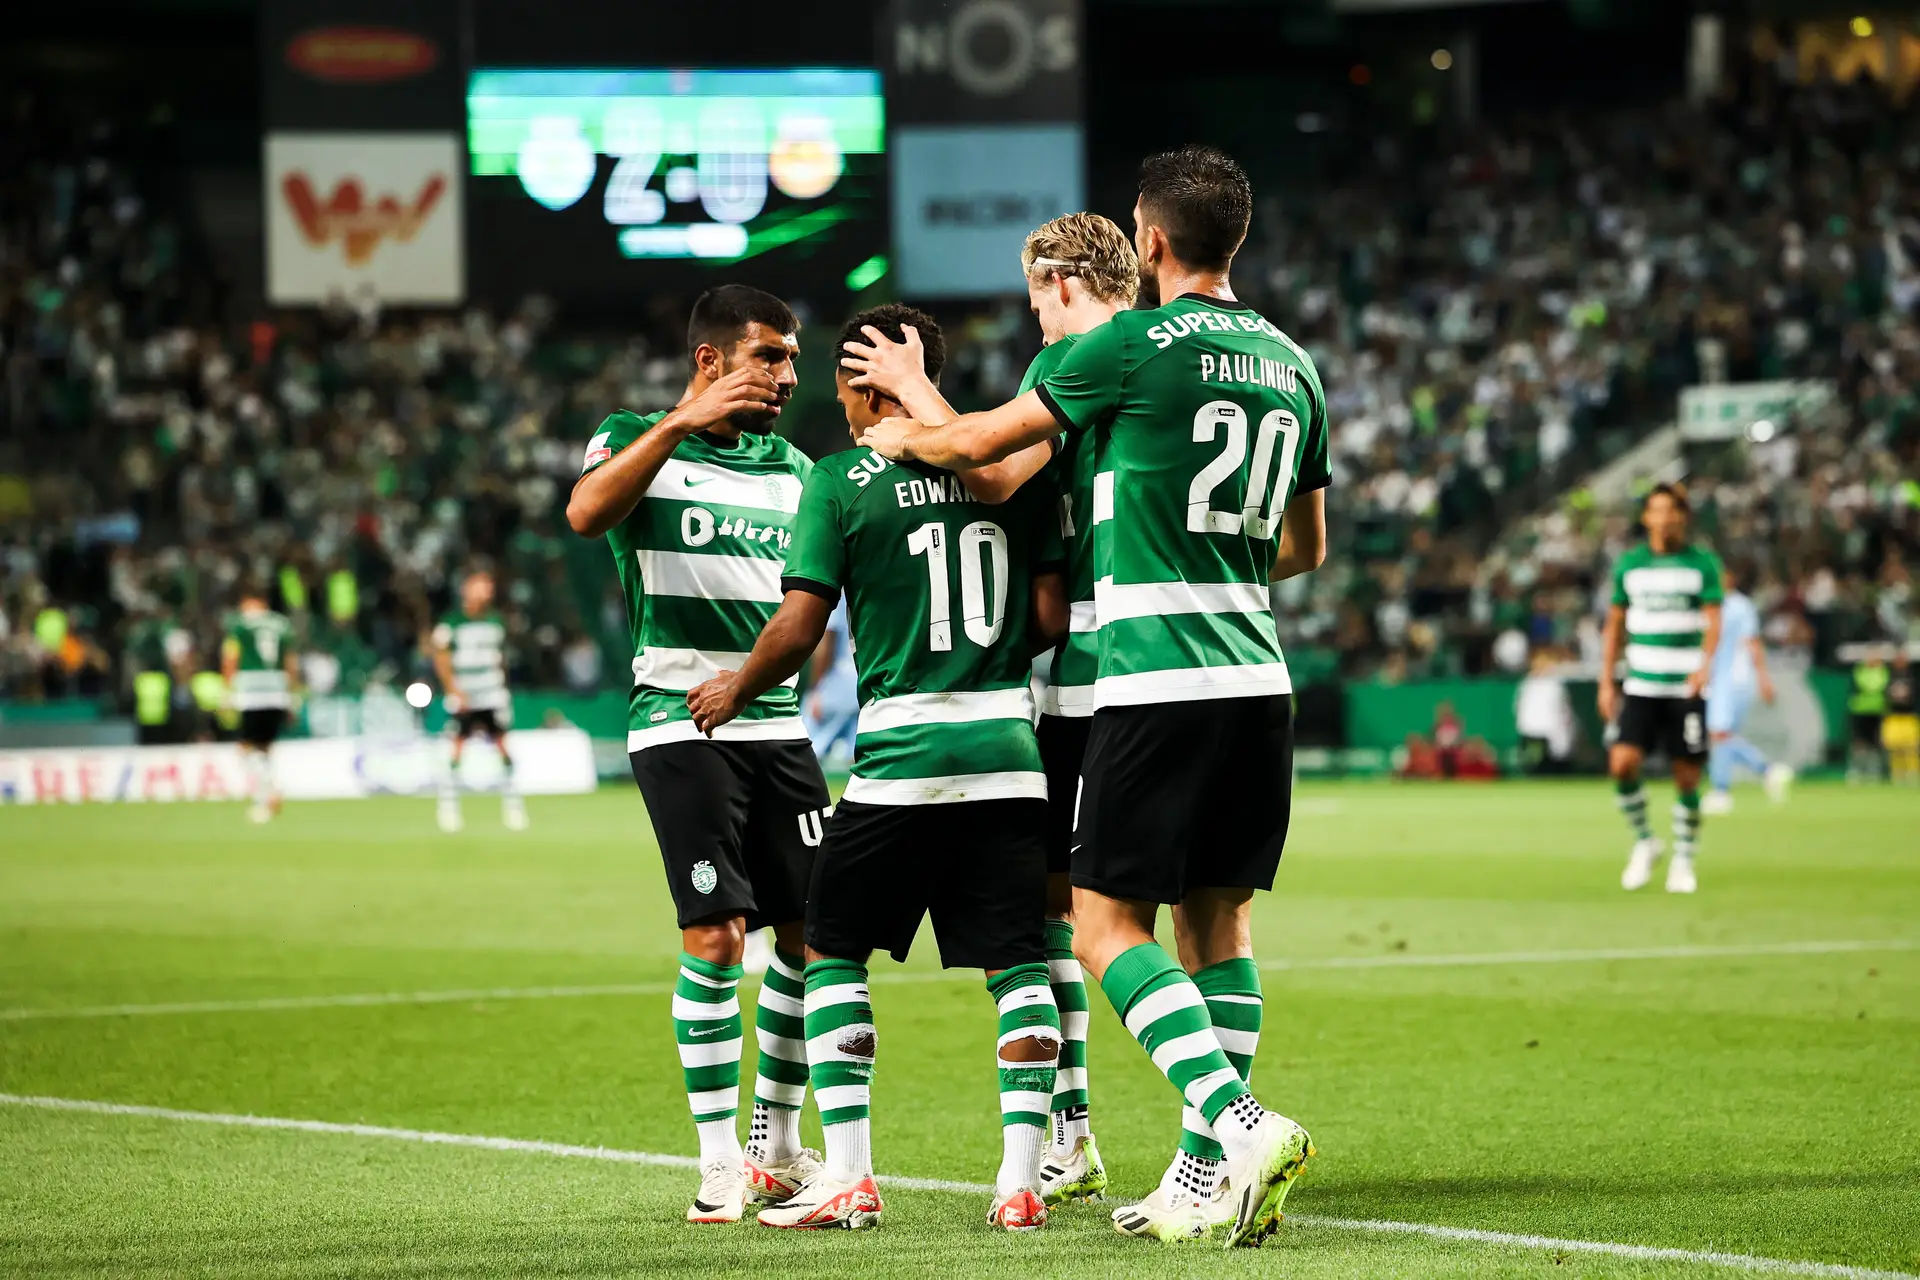 Sporting goleia Vilafranquense por 7-0 em jogo treino - SIC Notícias